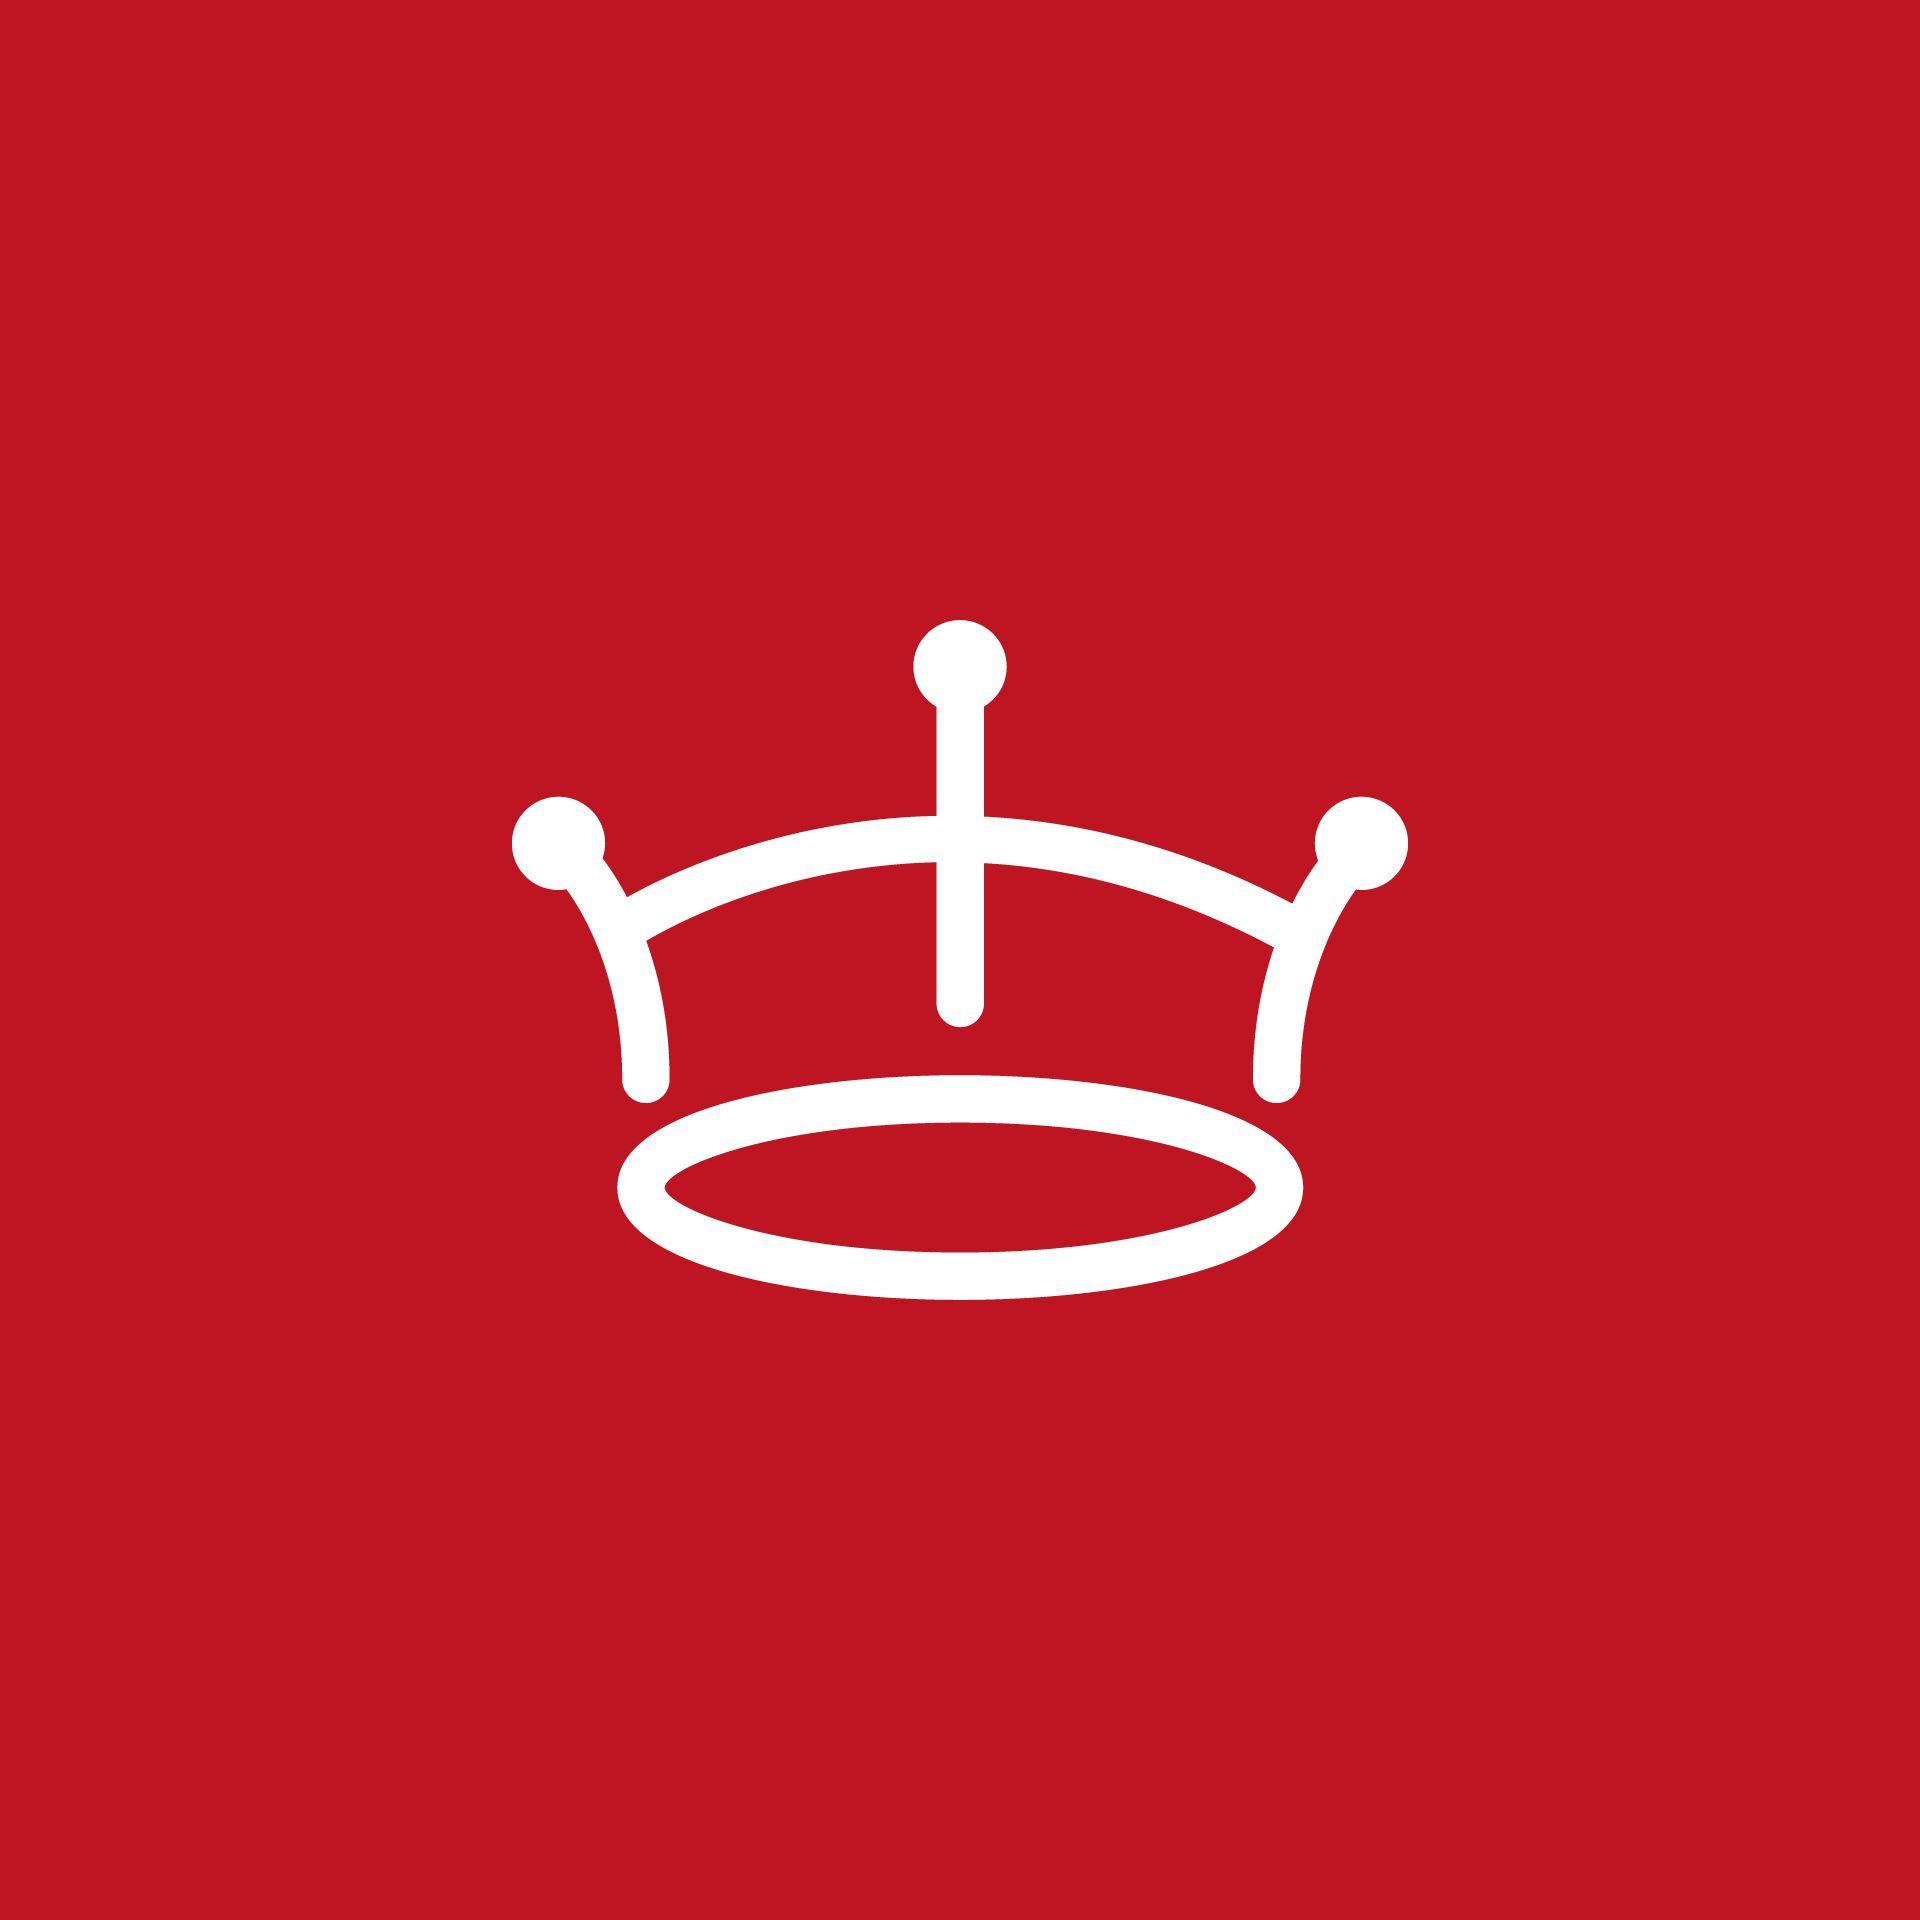 Red Crown Logo - Red crown logo. AngelHack Logos. Crown logo, Logos, Logo design